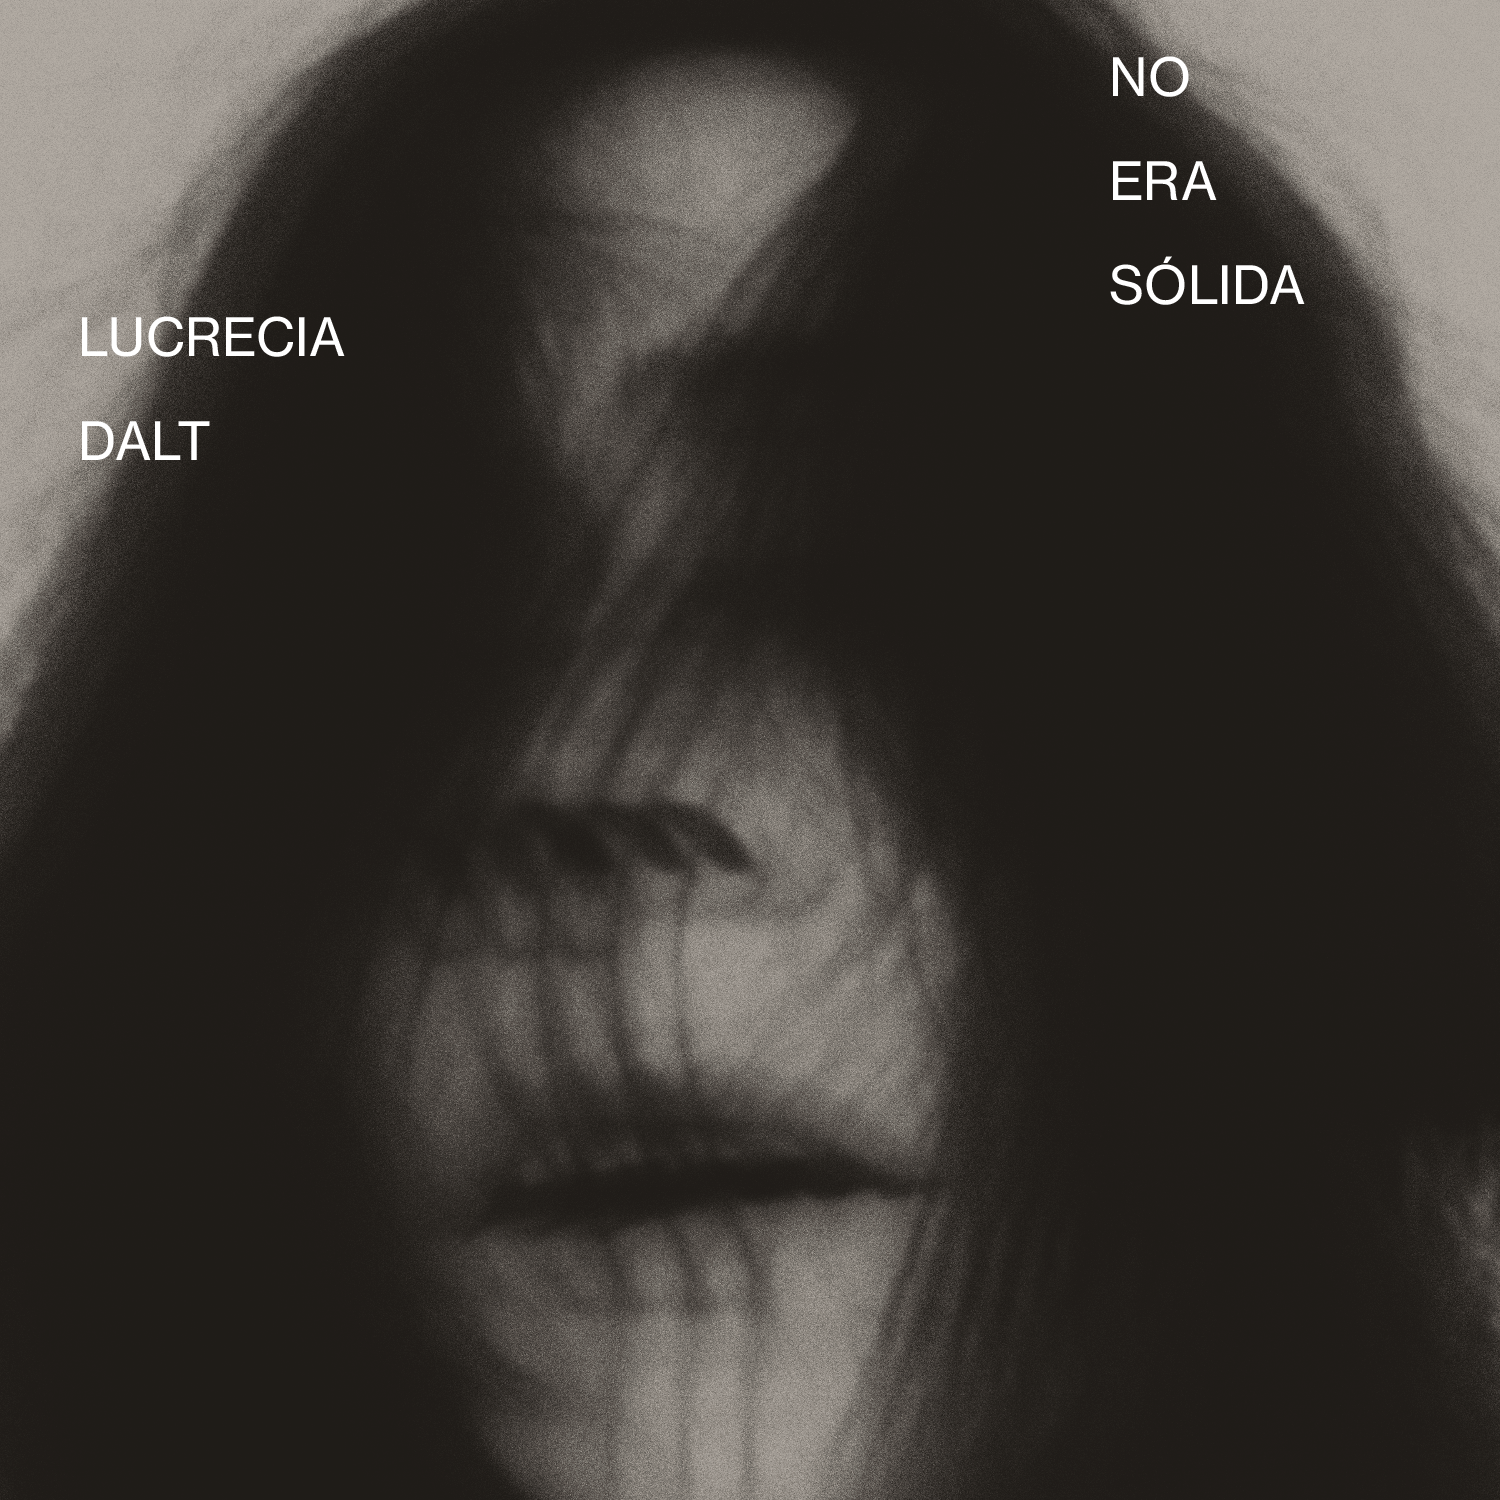 Image for Lucrecia Dalt – No era sólida